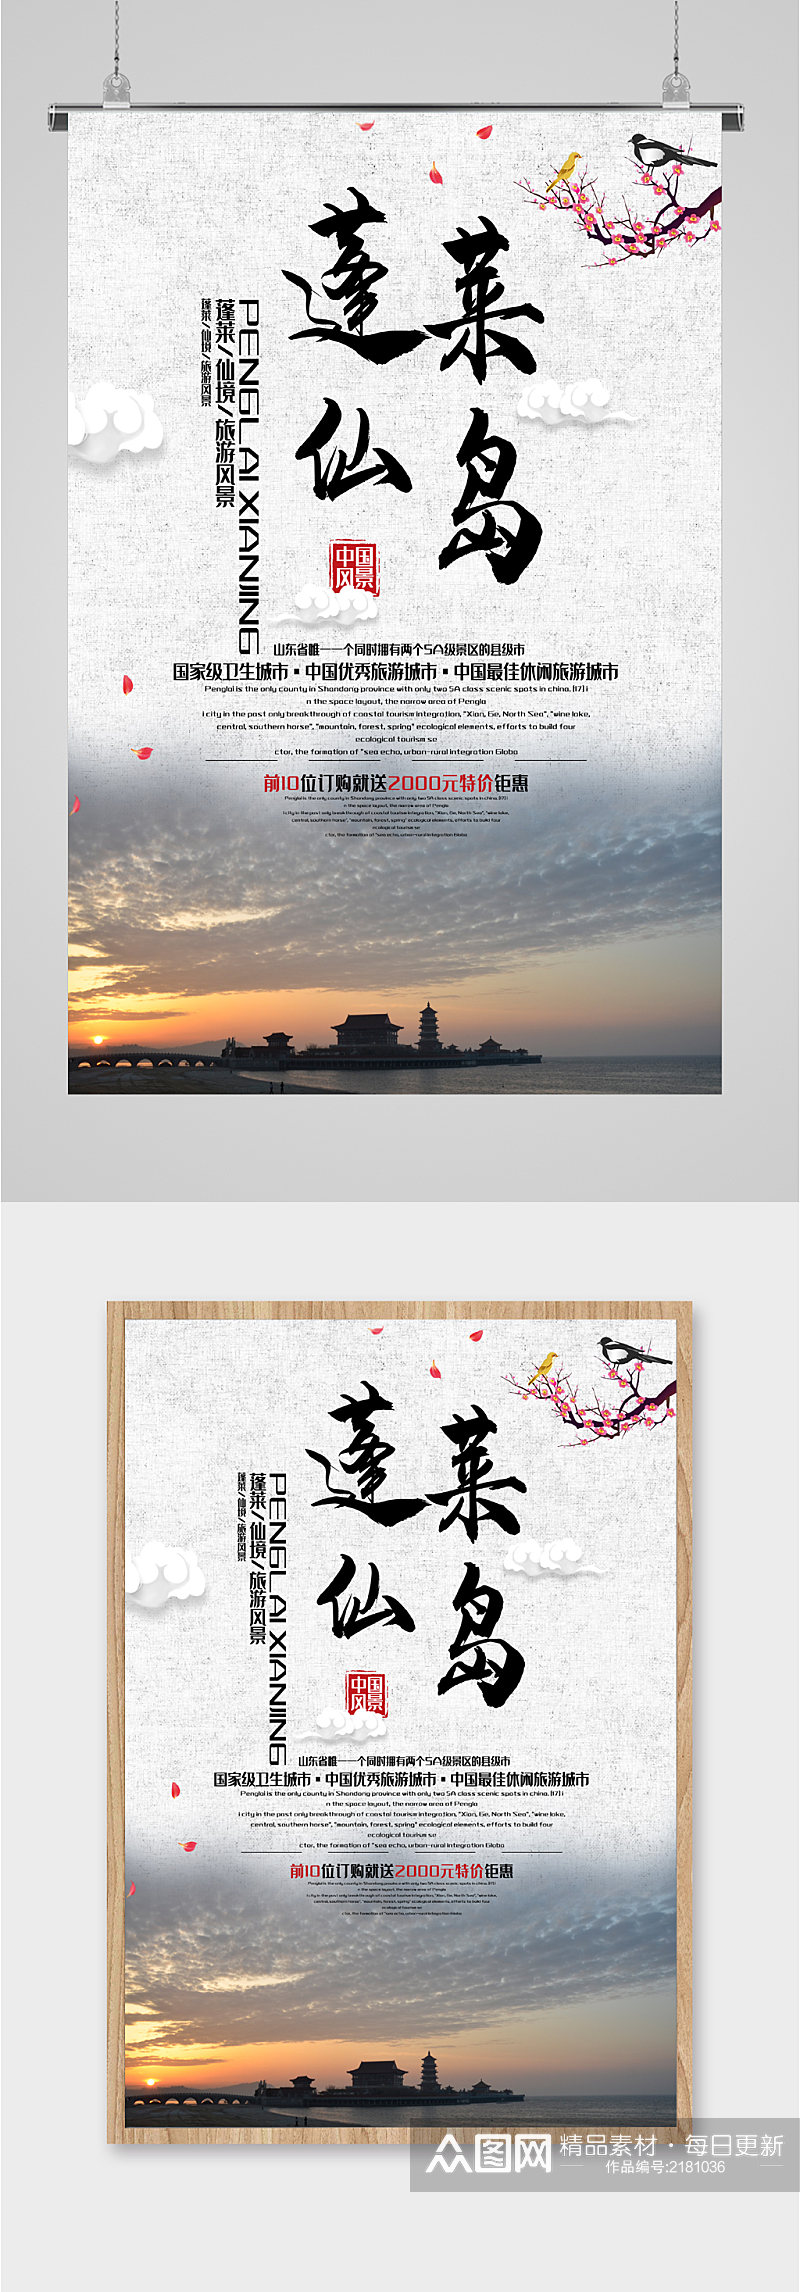 蓬莱仙岛风景旅游海报素材